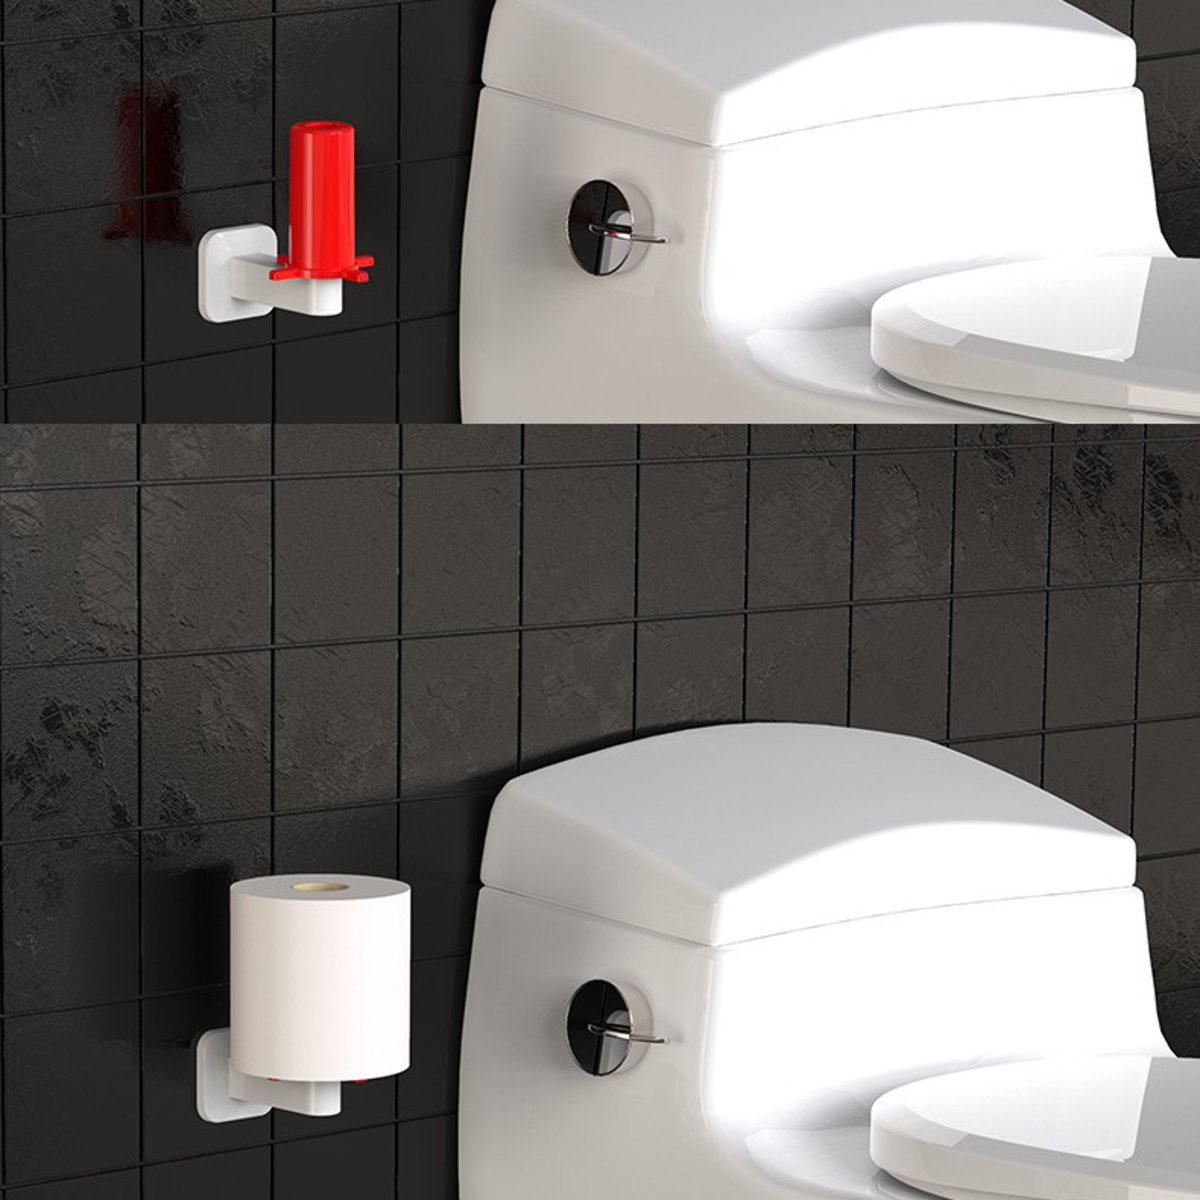 Roll-Paper-Holder-Toilet-Kitchen-Tissue-Towel-Storage-Organizer-Hanging-Rack-1590455-8